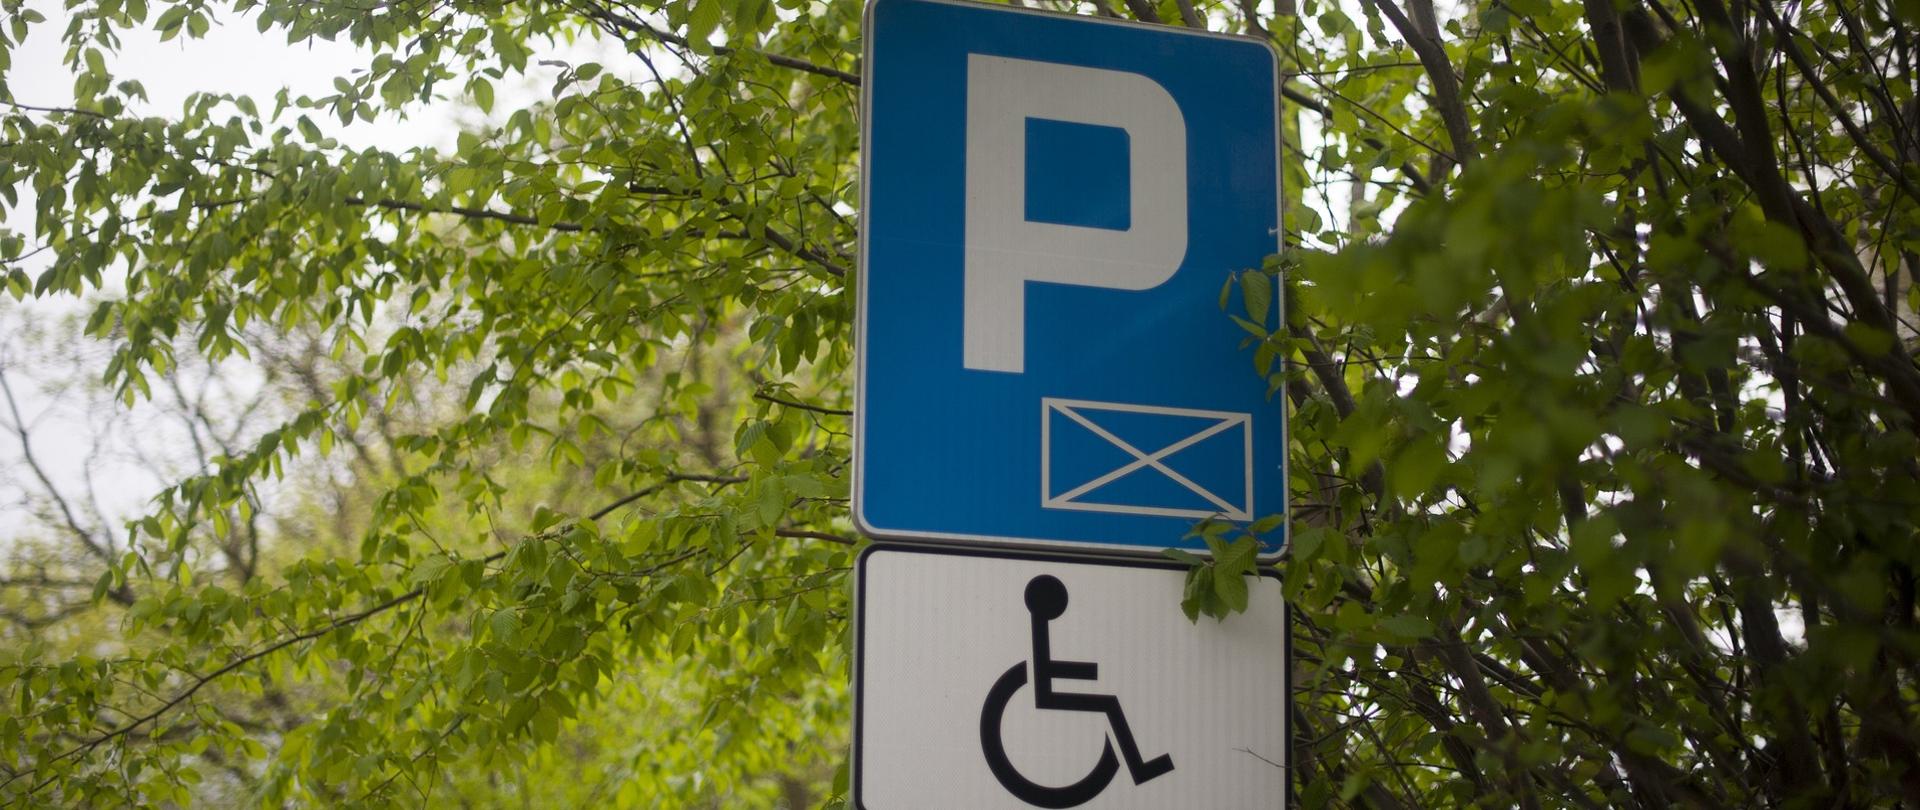 Znak drogowy umożliwiający parkowanie osobom z niepełnosprawnościami. Znak znajduję obok zielonego drzewa.